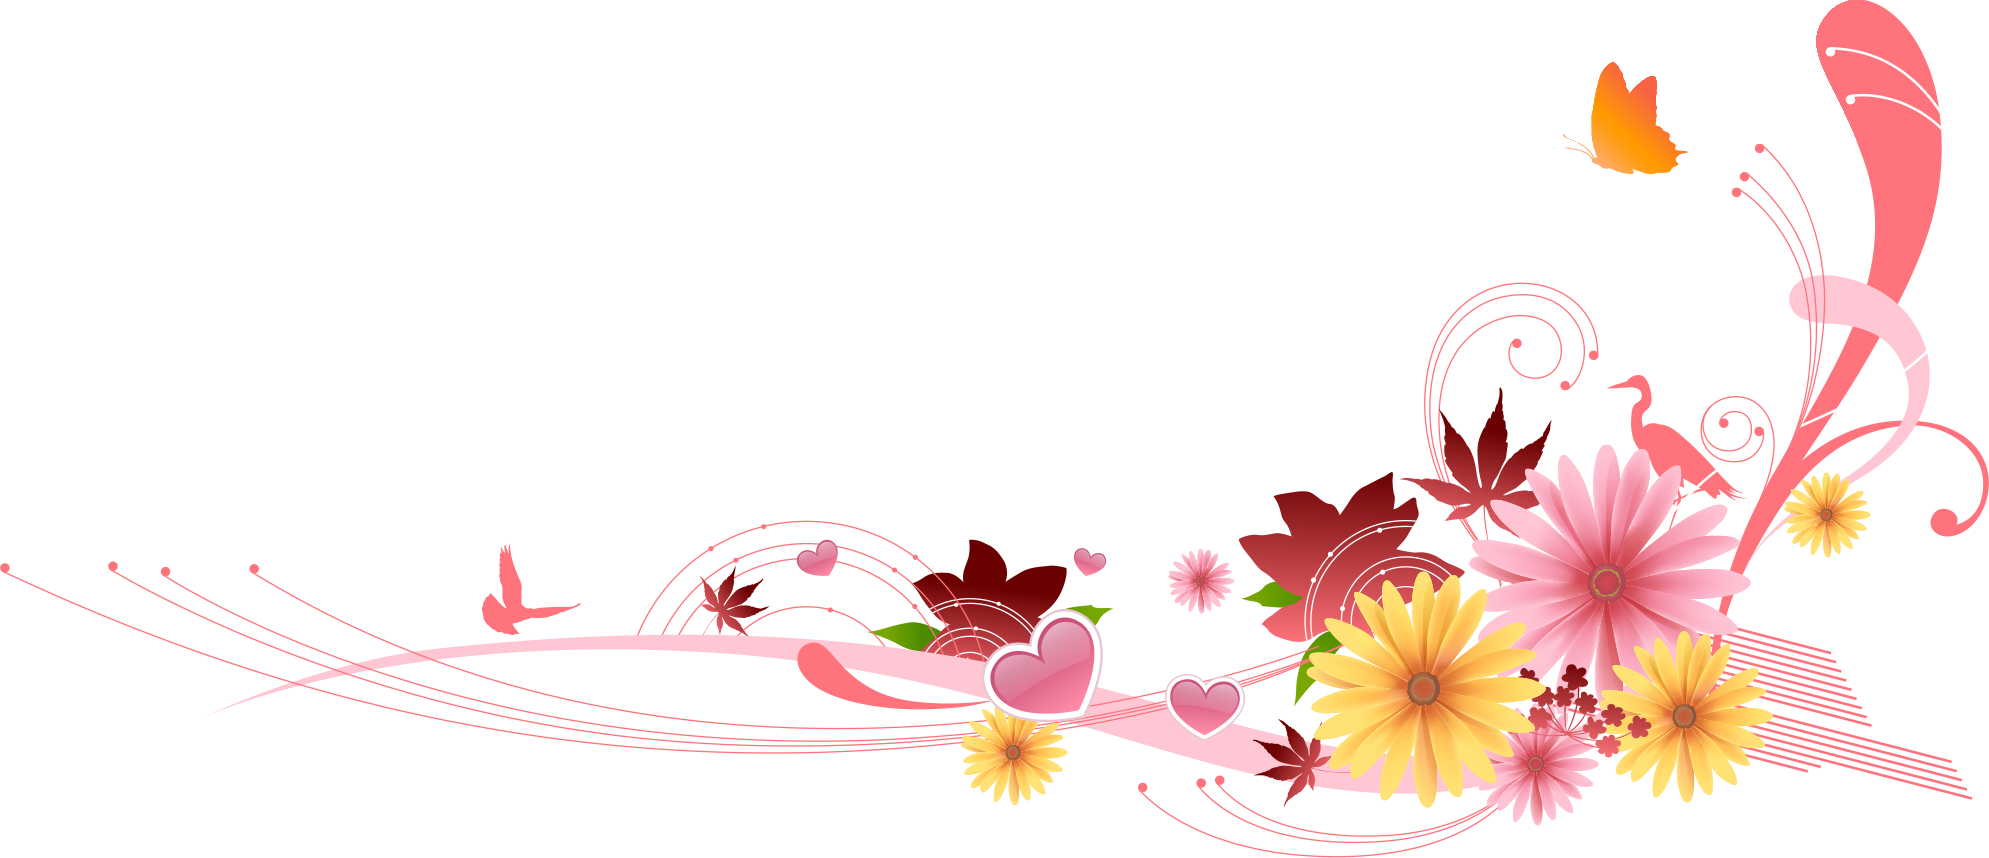 ガーベラ デージーの花のイラスト 画像 無料で使えるフリー素材